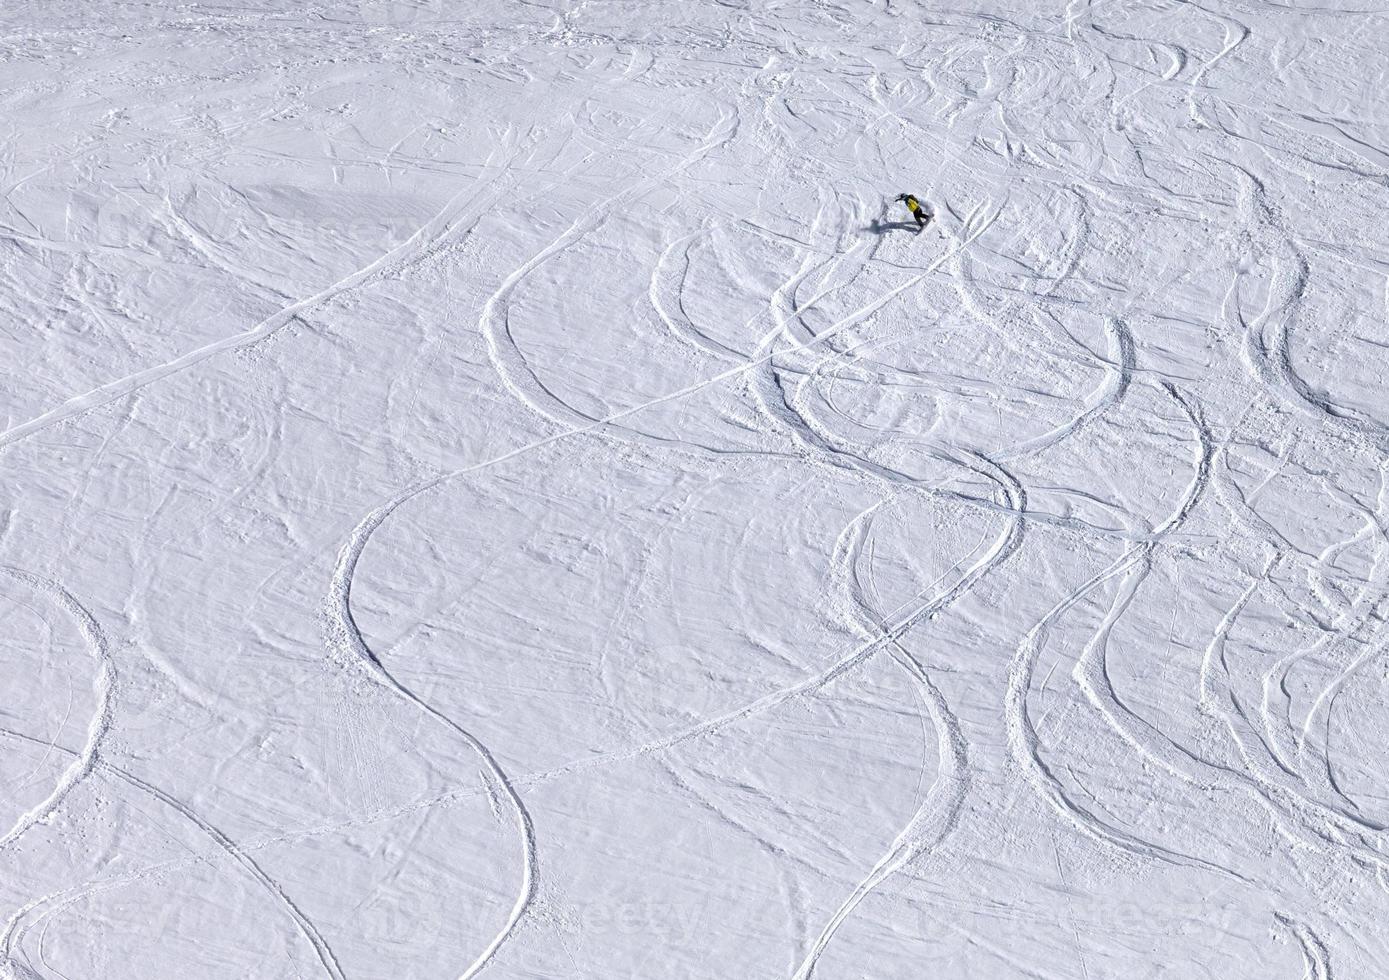 Snowboarder bergab auf Pistenhang mit Neuschnee foto